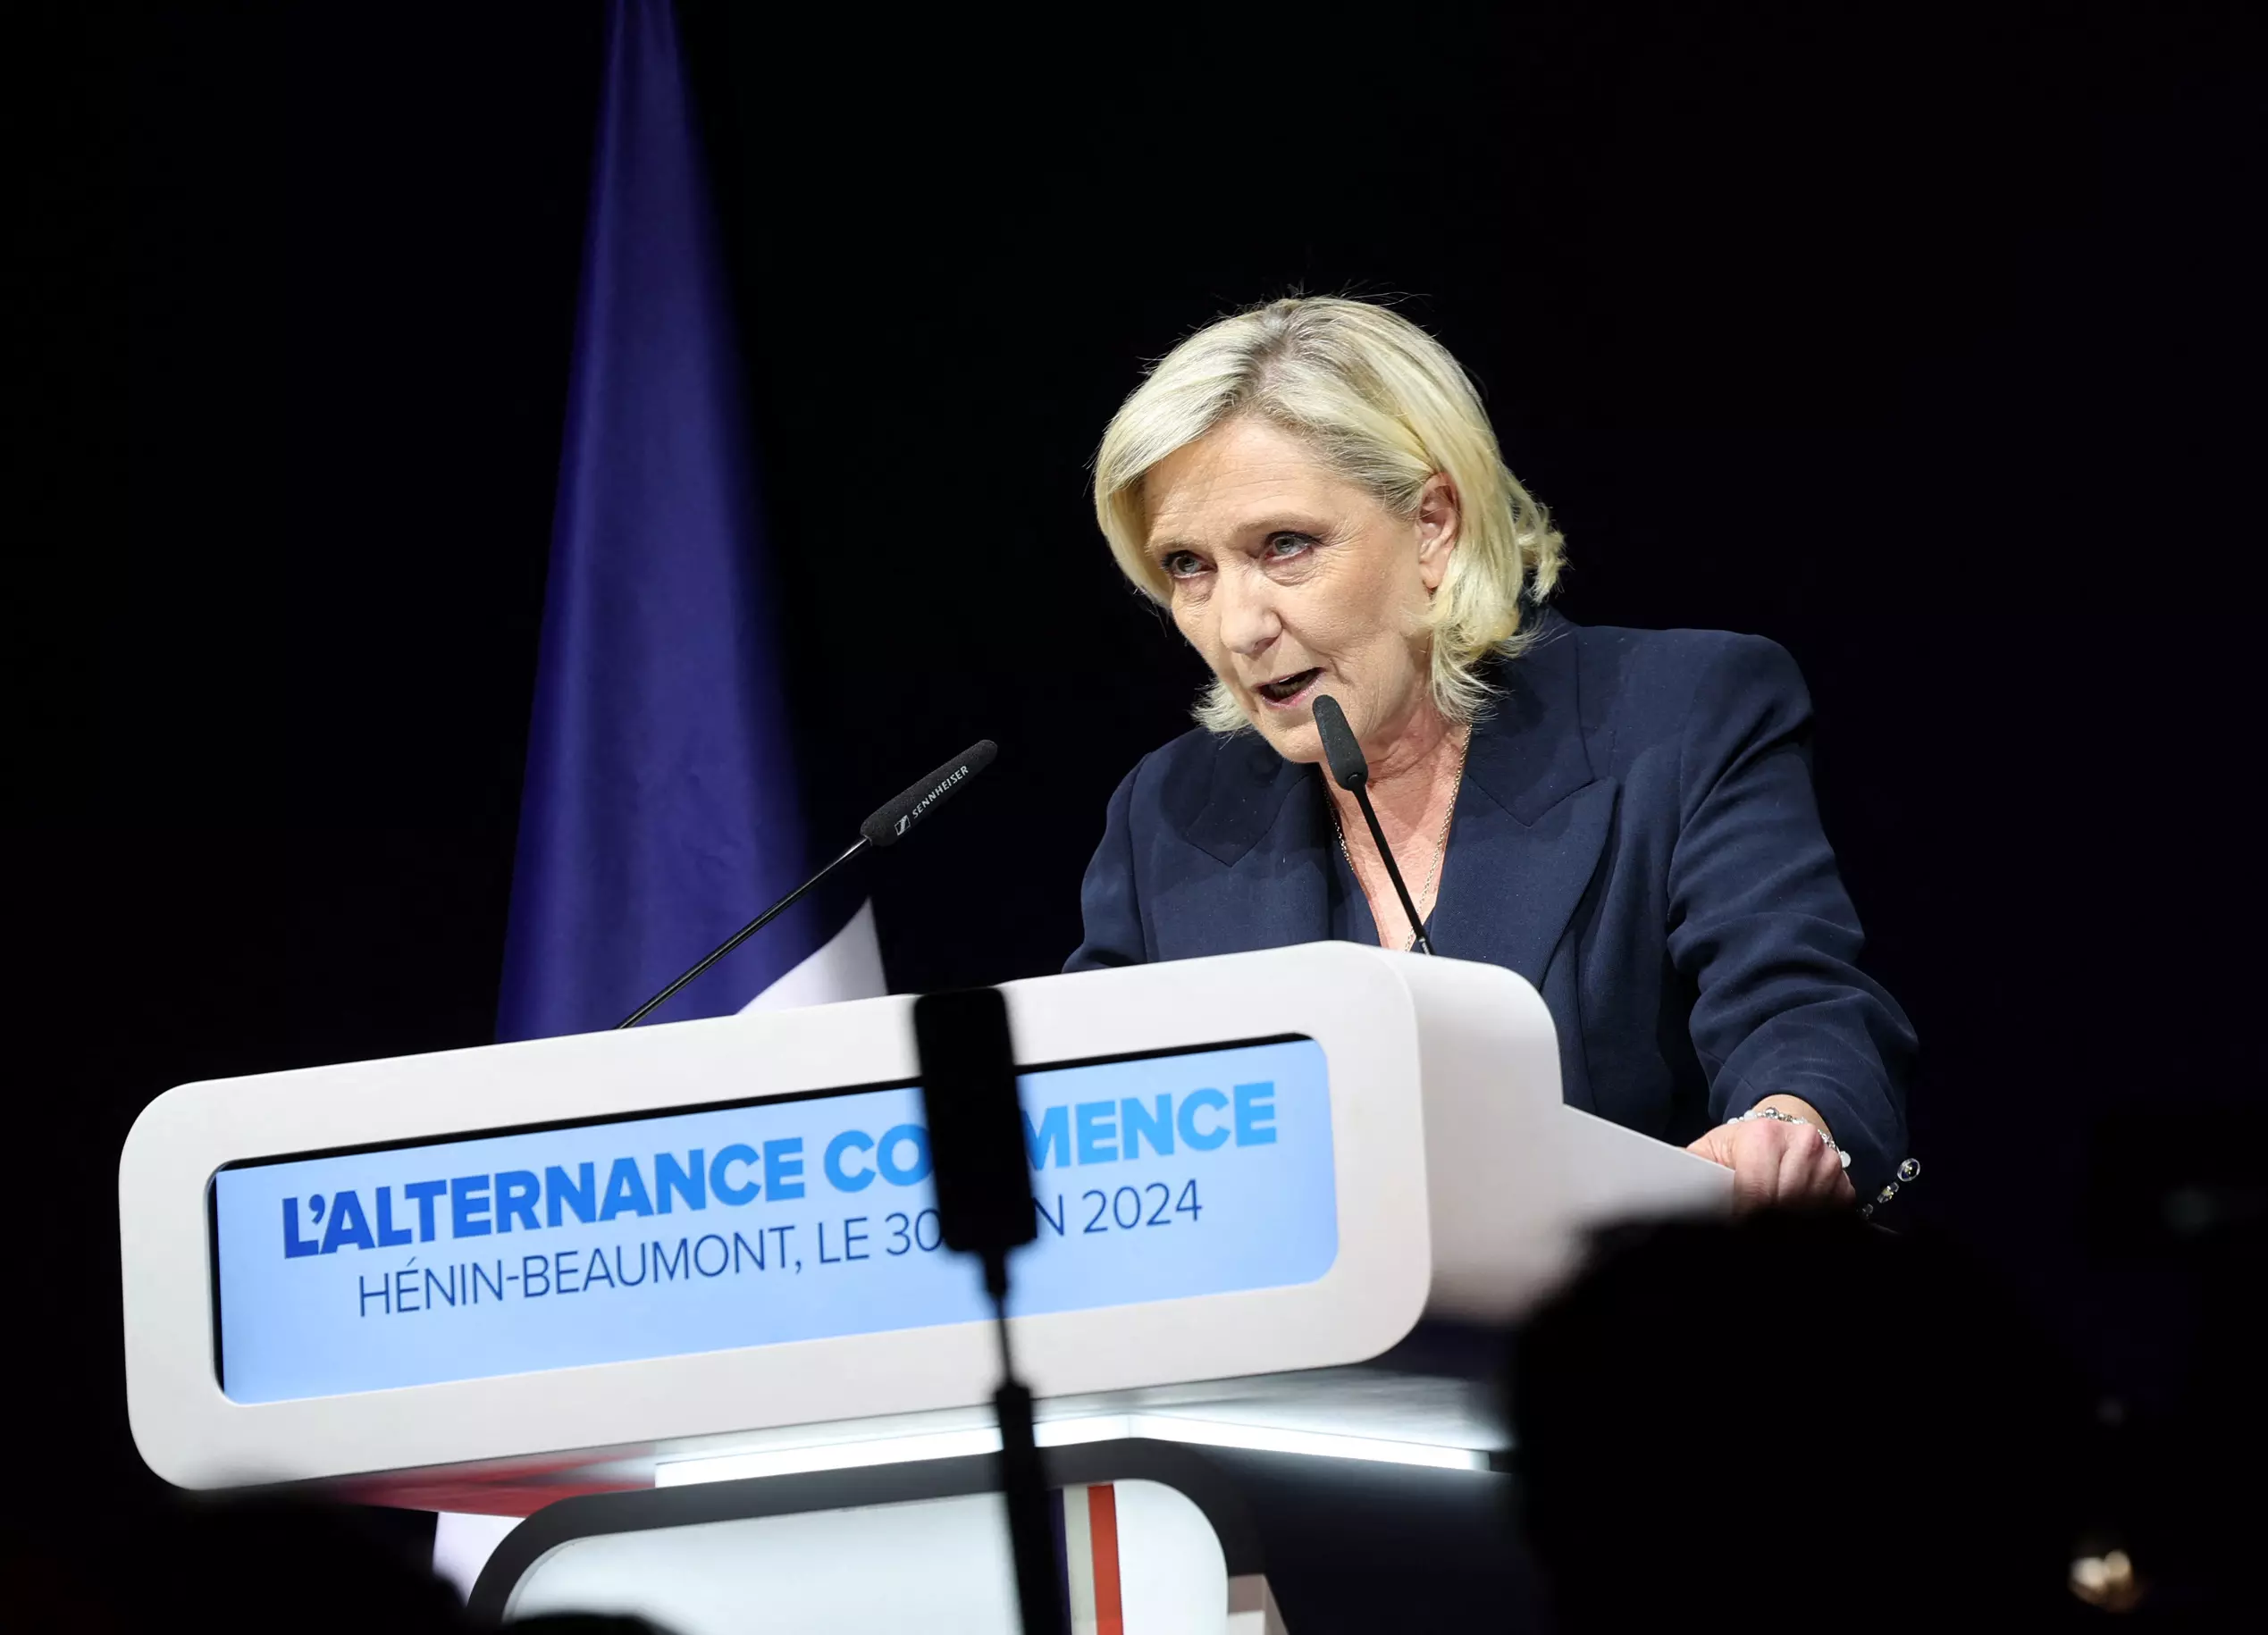 La líder de la ultraderecha francesa, Marine Le Pen, durante un acto de RN. — Andre Pain / EFE